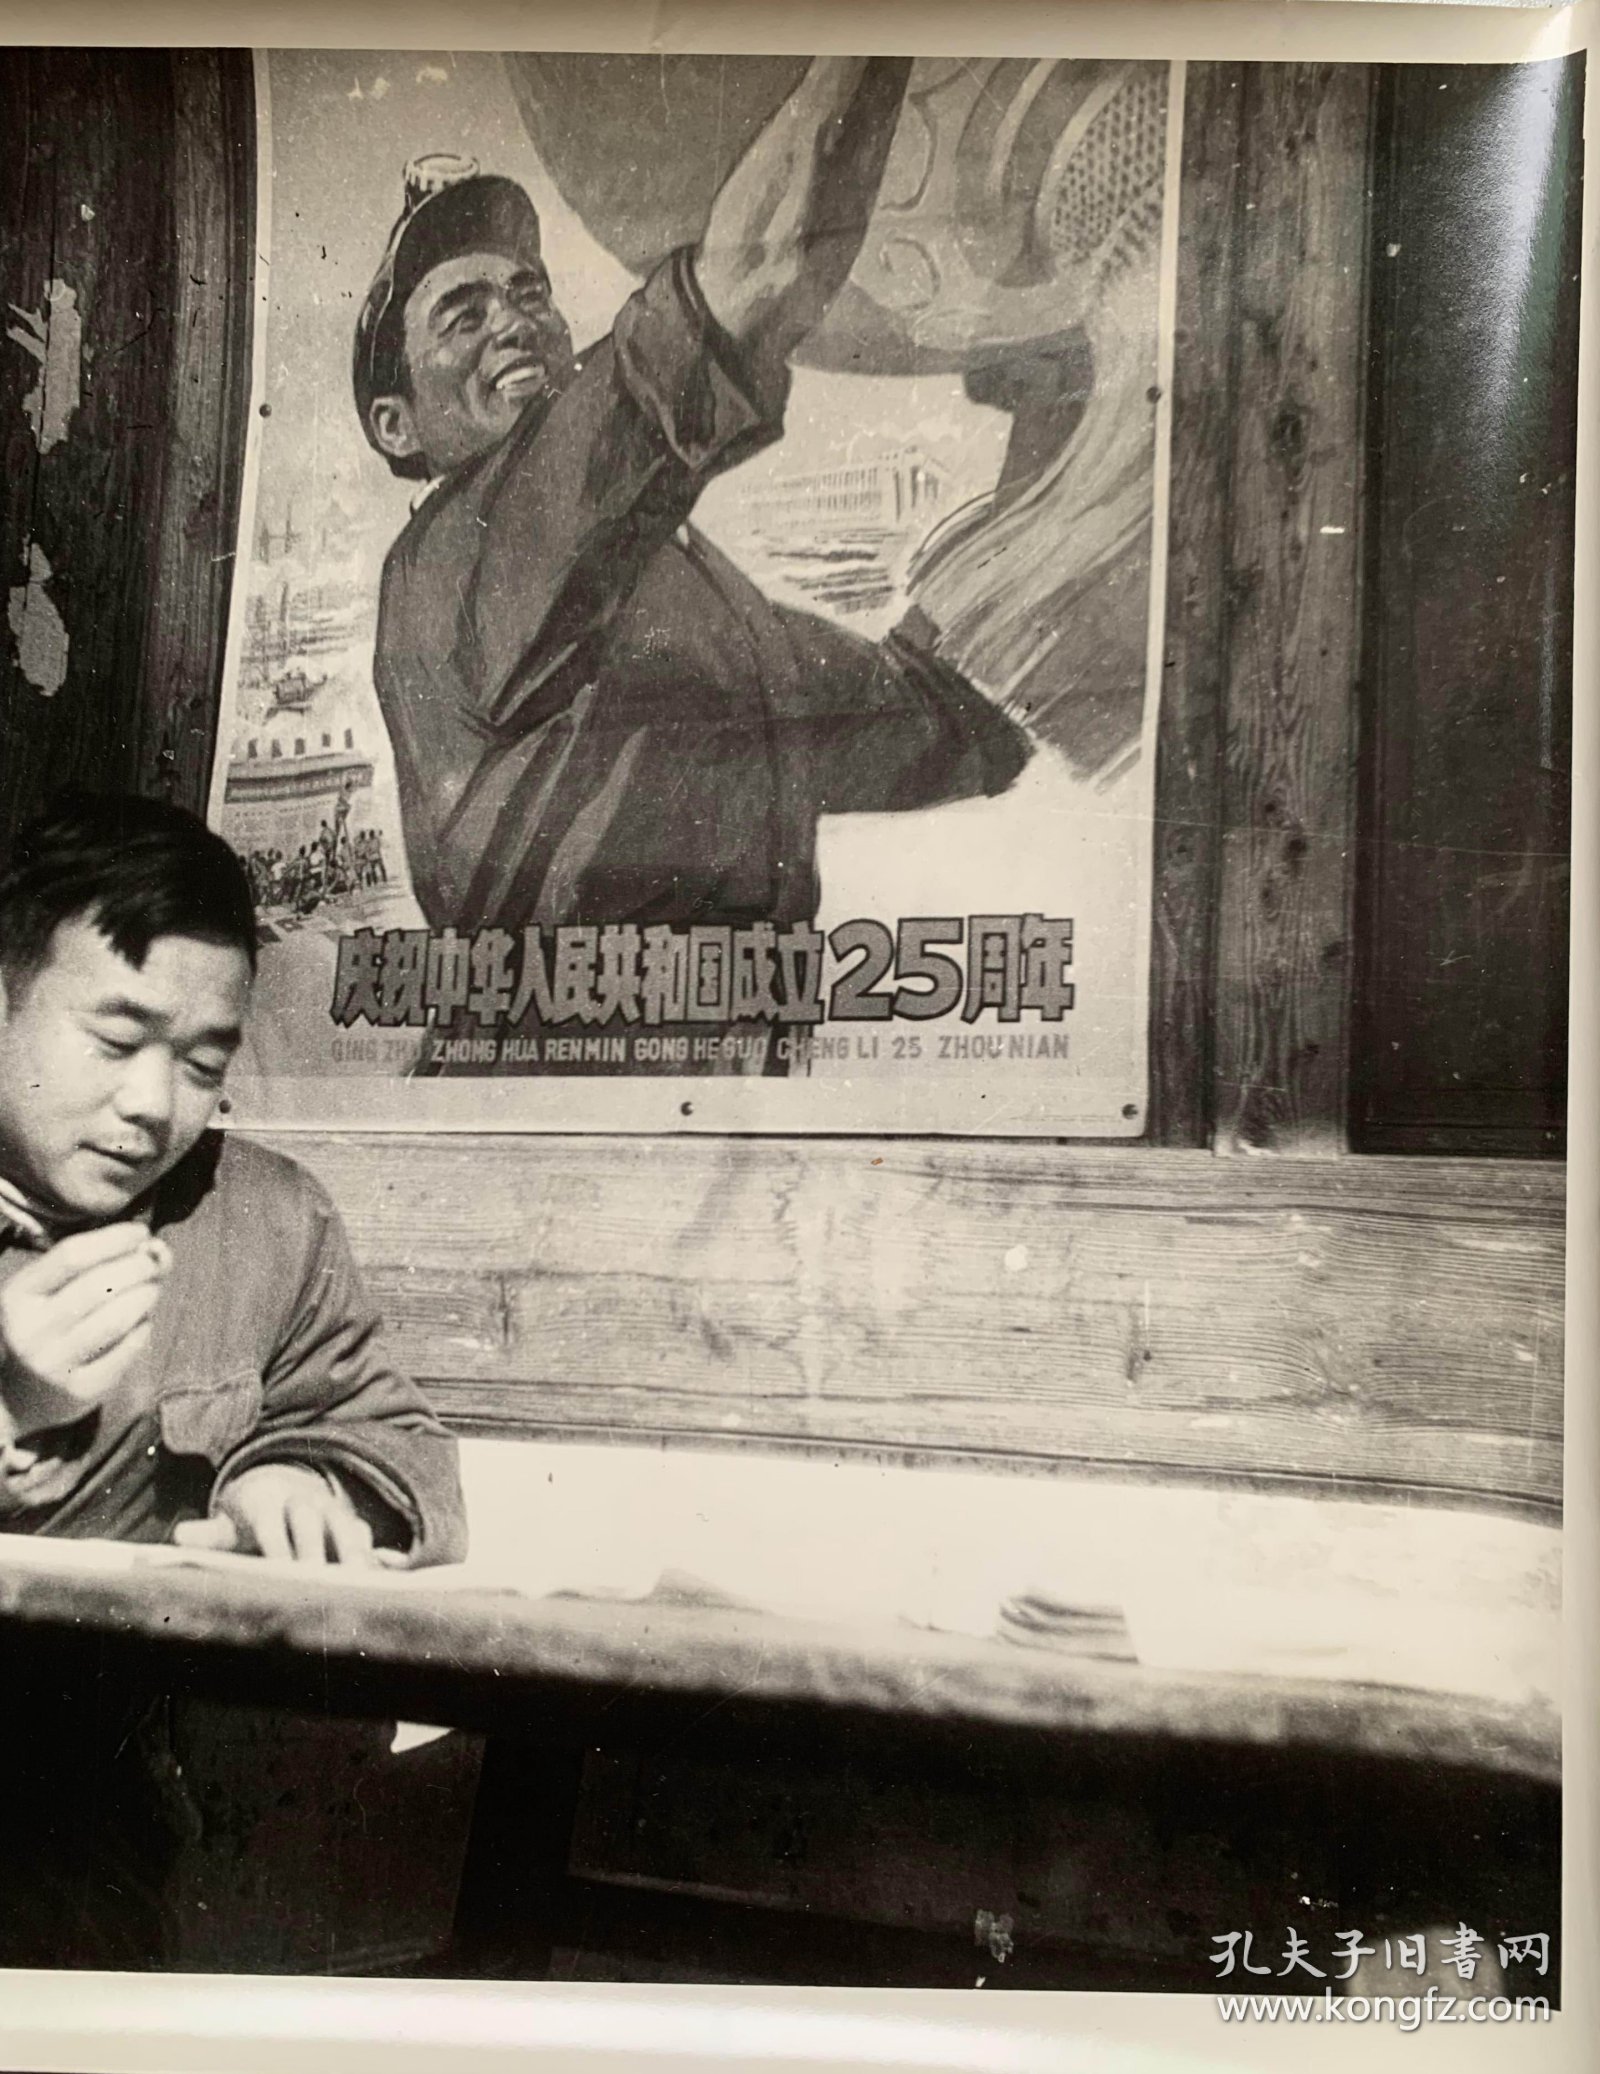 大幅照片、庆祝中华人民共和国成立25周年